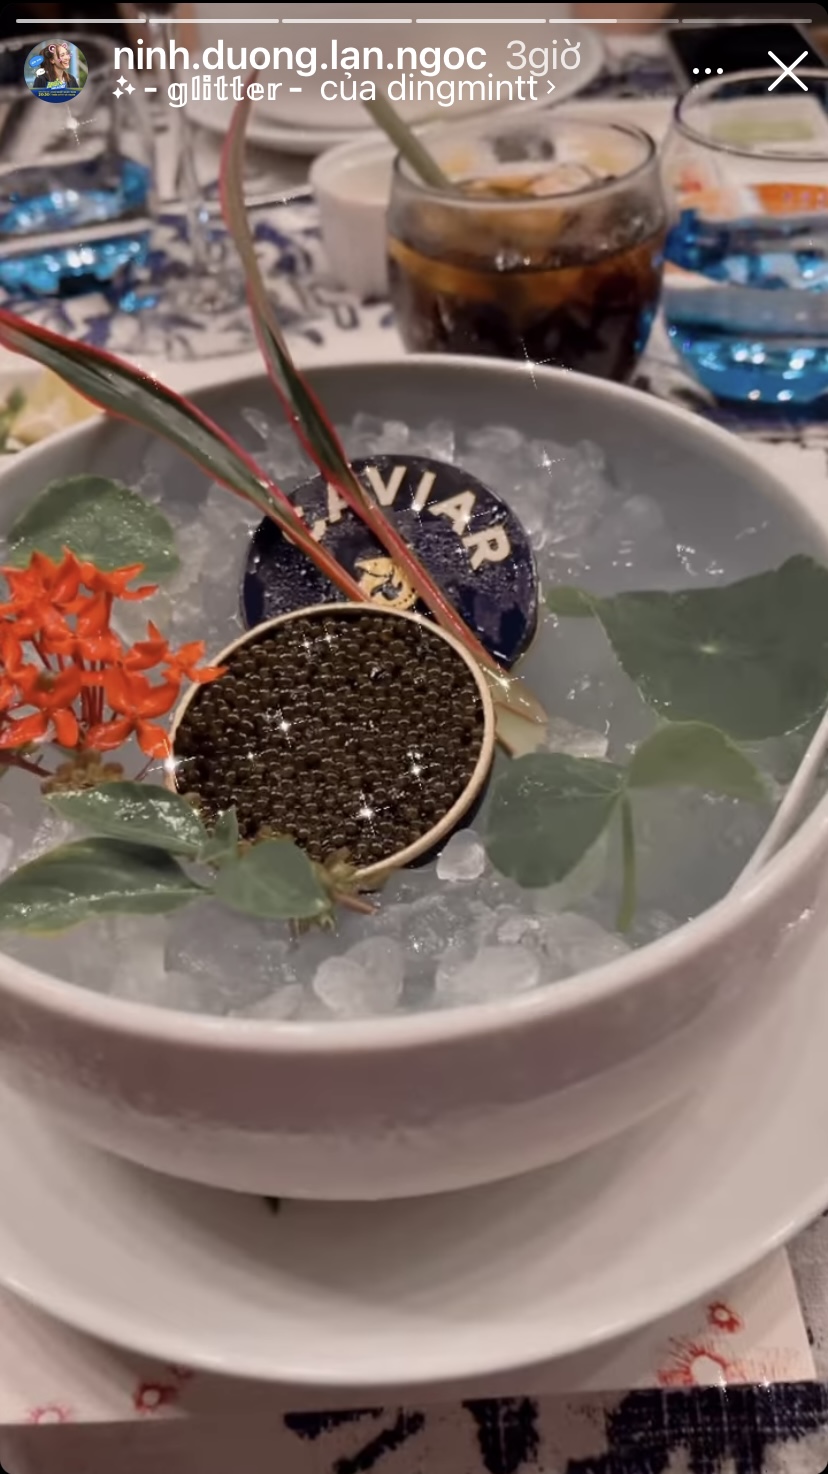 Ninh Dương Lan Ngọc có món trứng cá muối Caviar trong bữa ăn hôm nay. Nổi tiếng là một trong những món ăn xa xỉ, trứng cá muối có vị mặn là lạ và giòn tan khi thưởng thức.